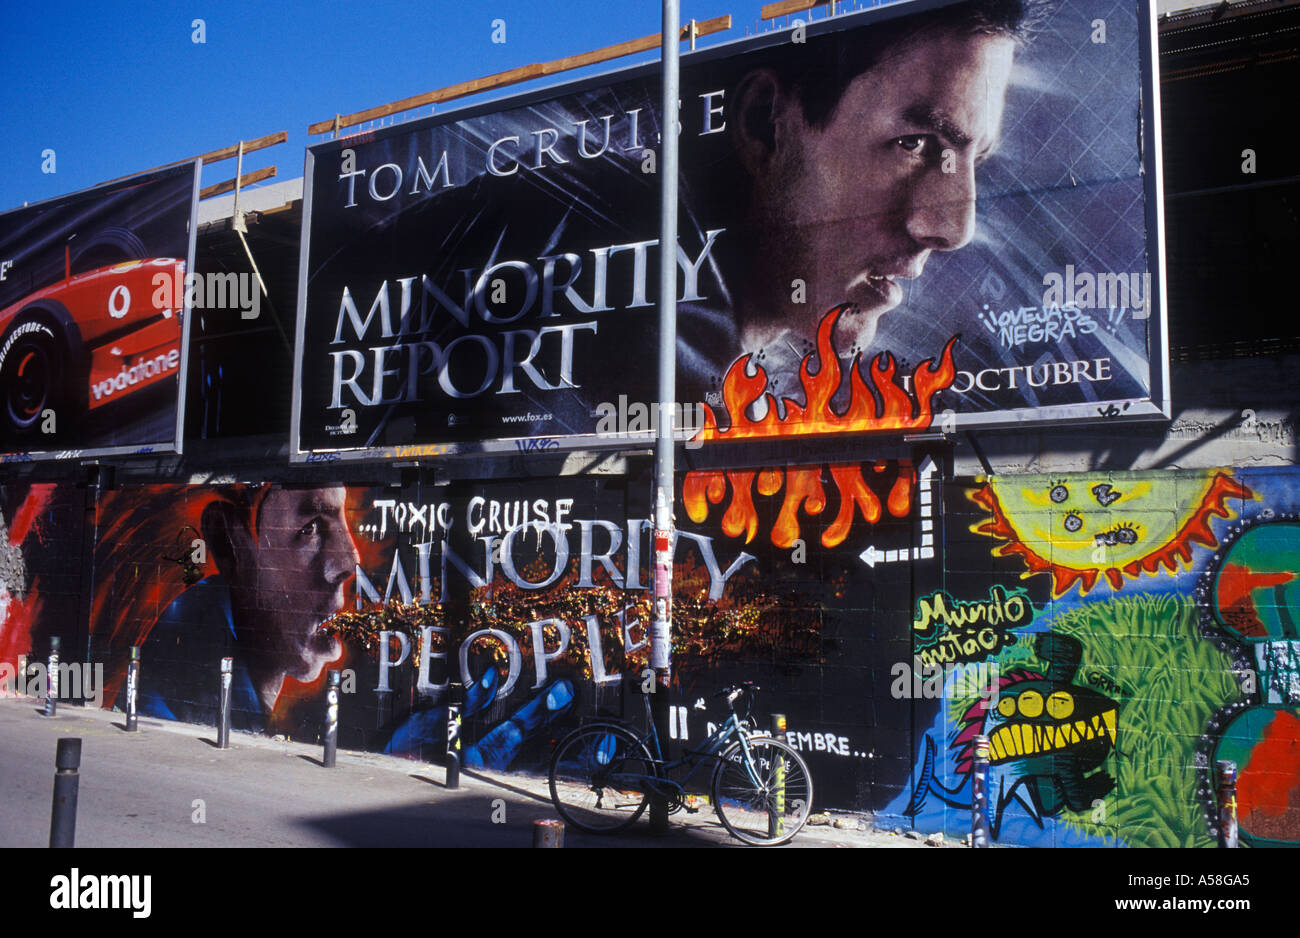 Calle Montalegre Barcelona Spanien Minority Report Filmplakat mit Tom Cruise auf Werbung horten über Graffiti-version Stockfoto